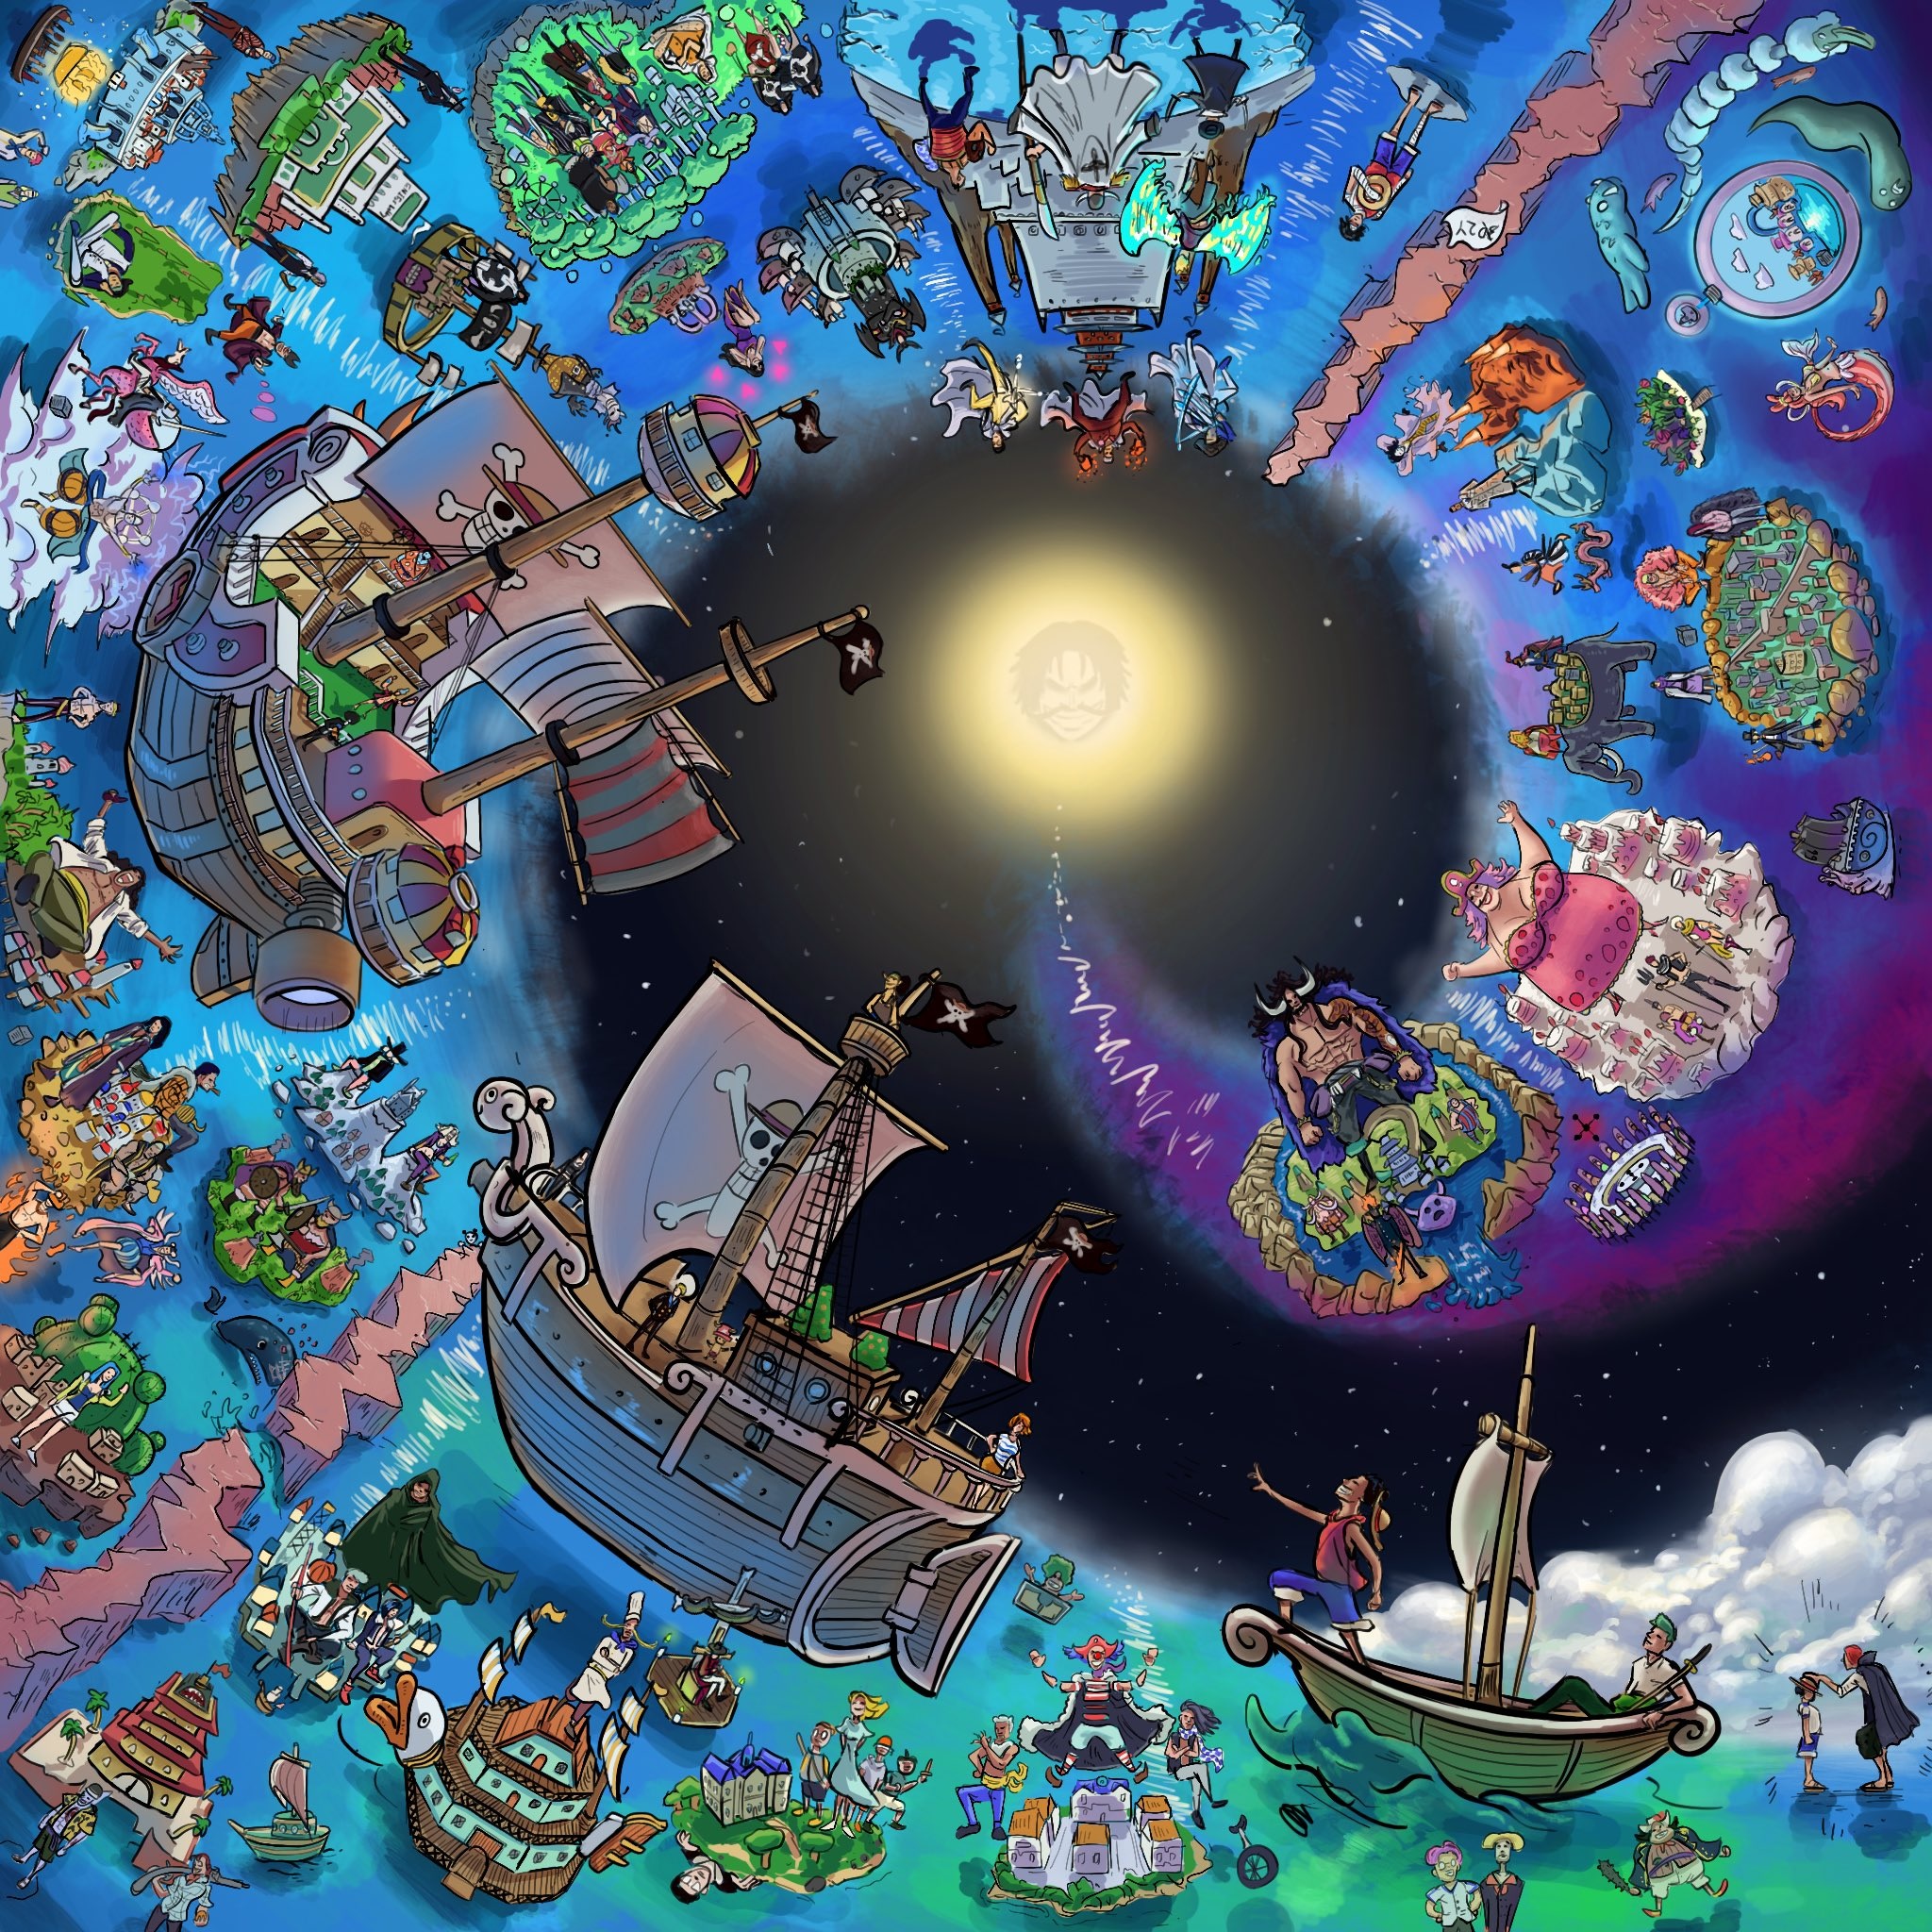 One Piece: Netflix revela visual do navio Going Merry